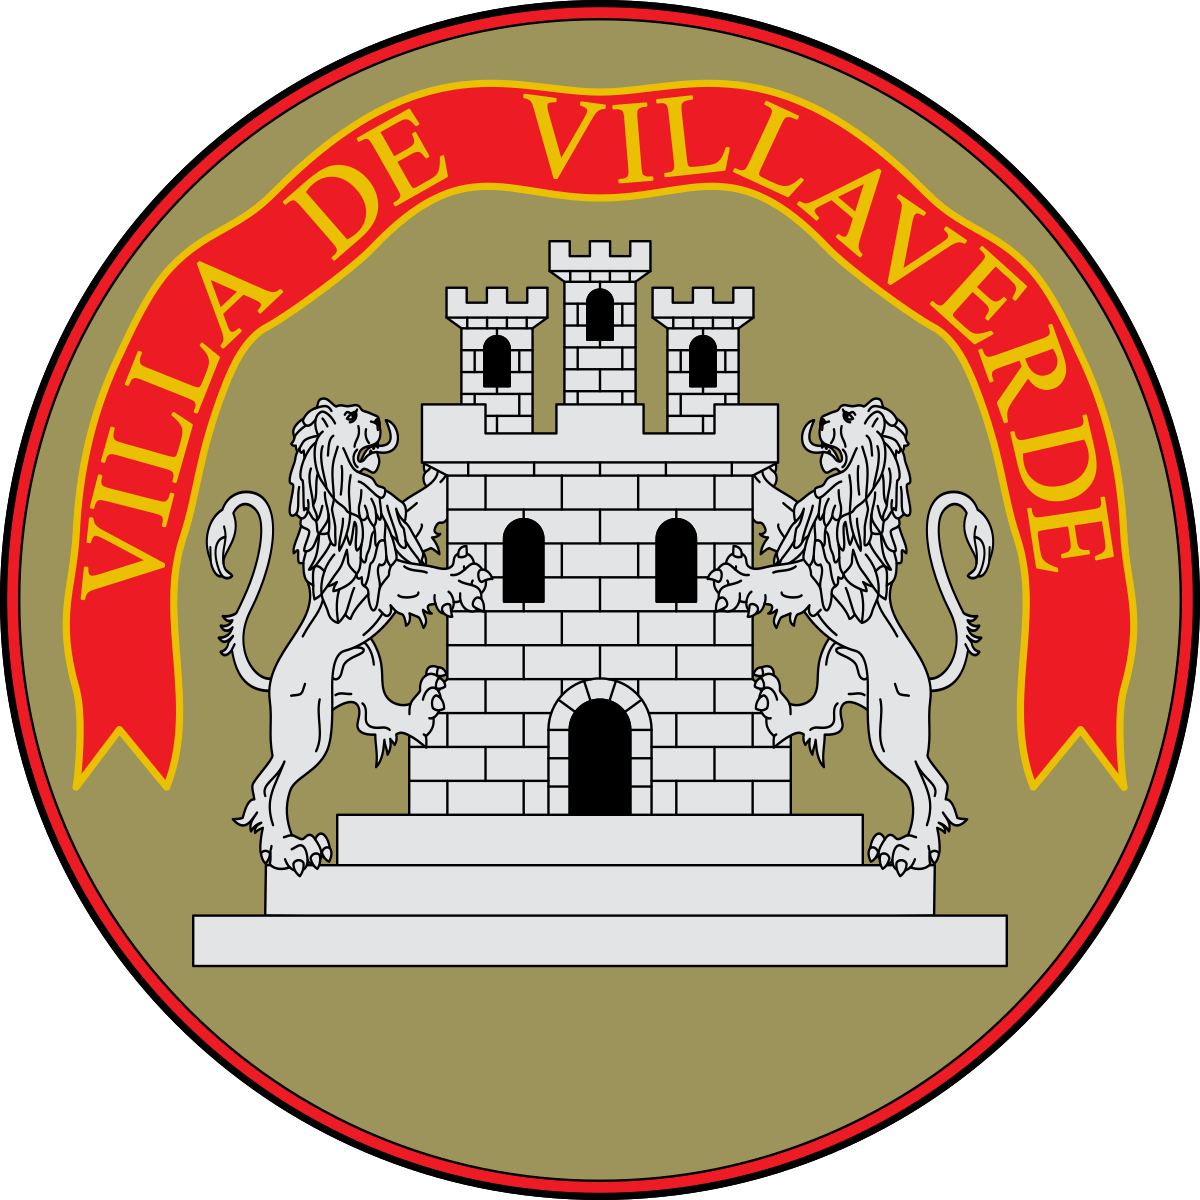 Símbolo_de_Villaverde_del_Río_(Sevilla).svg